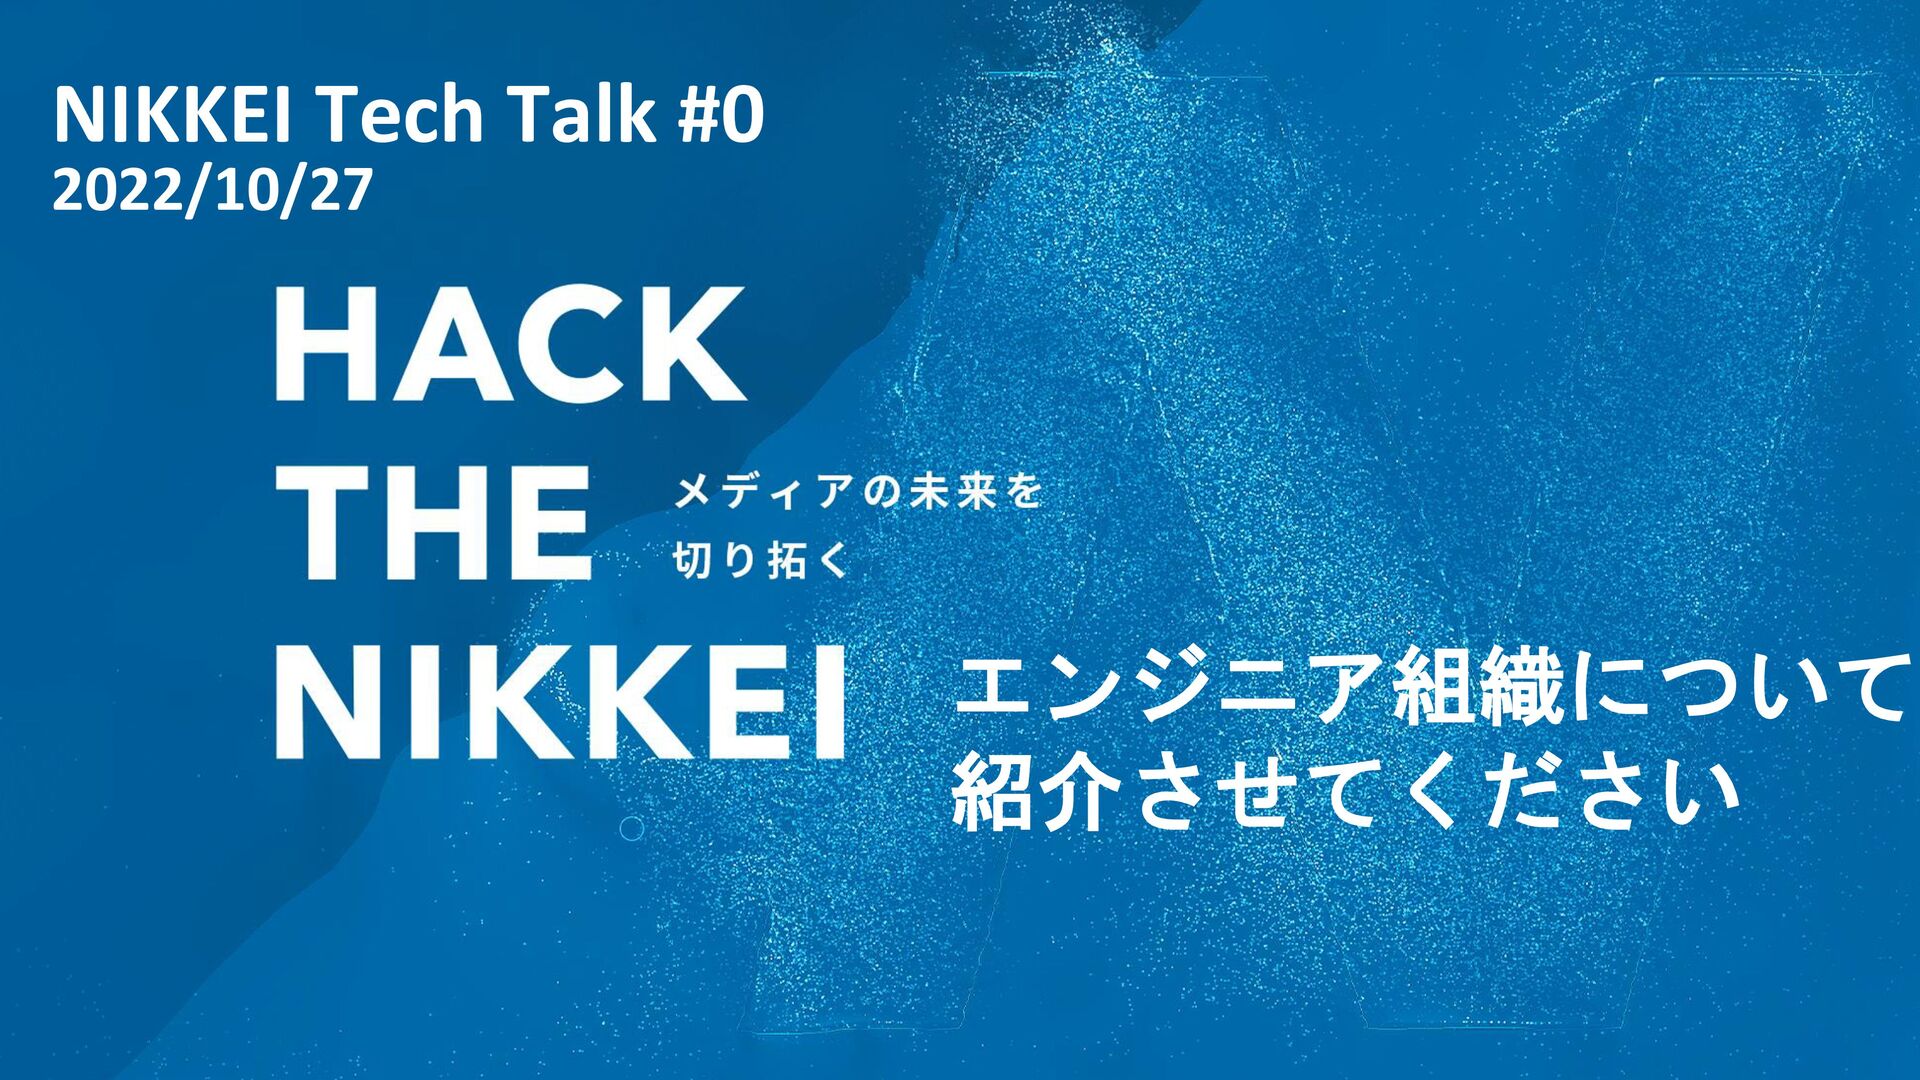 エンジニア組織について紹介させてください 〜Nikkei Tech Talk vol.0〜